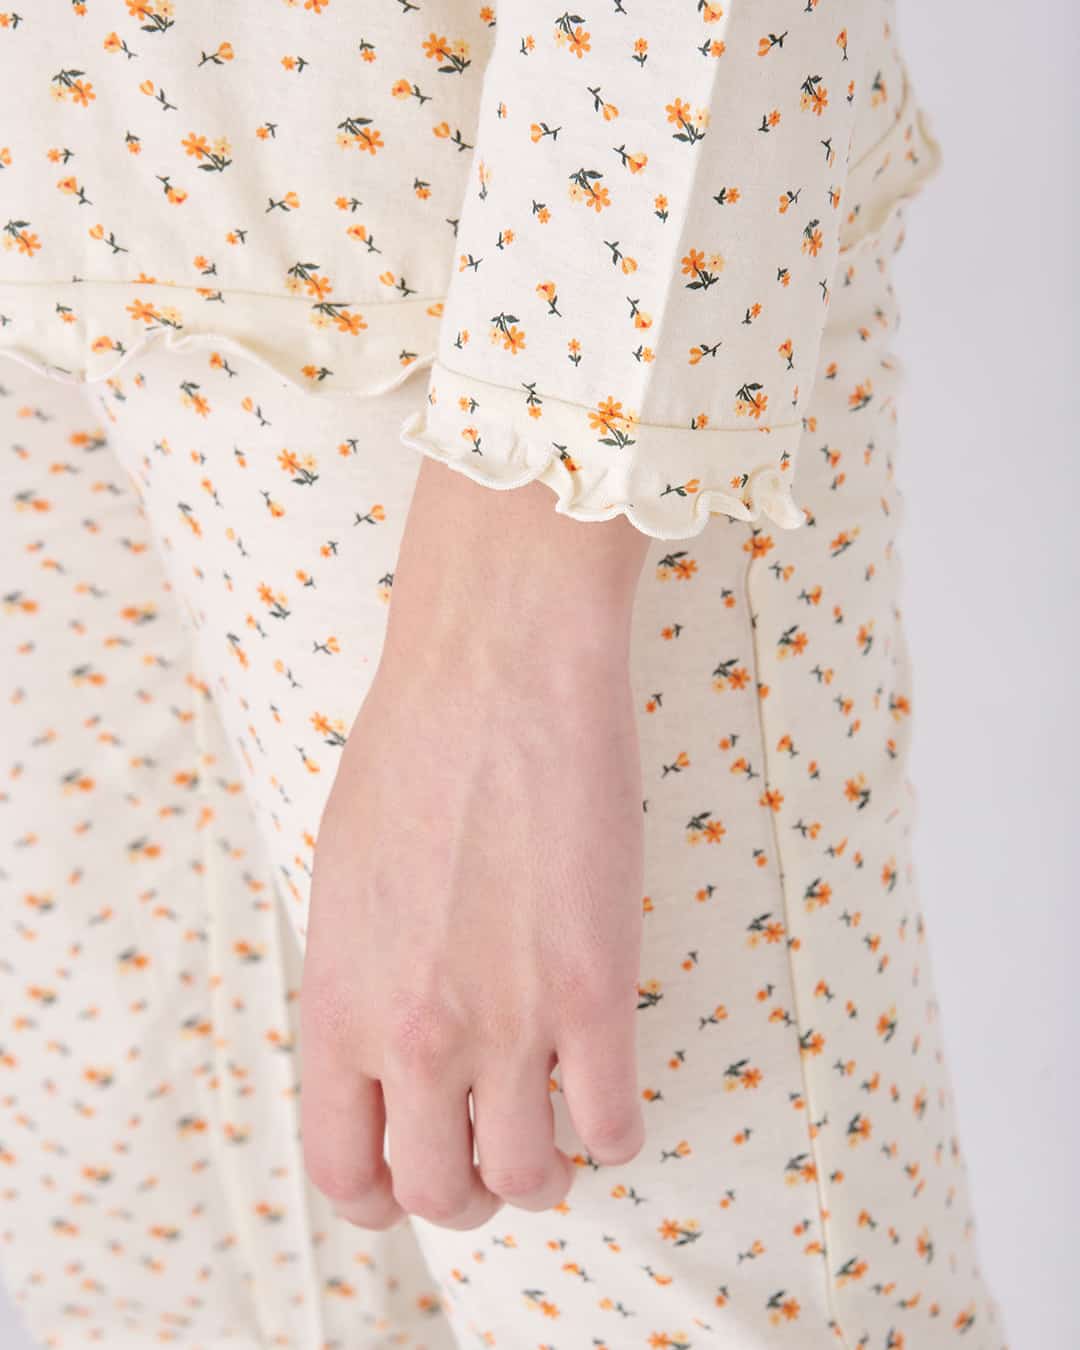 Dettaglio manica del pigiama aperto lungo da donna con fiorellini e fiocco